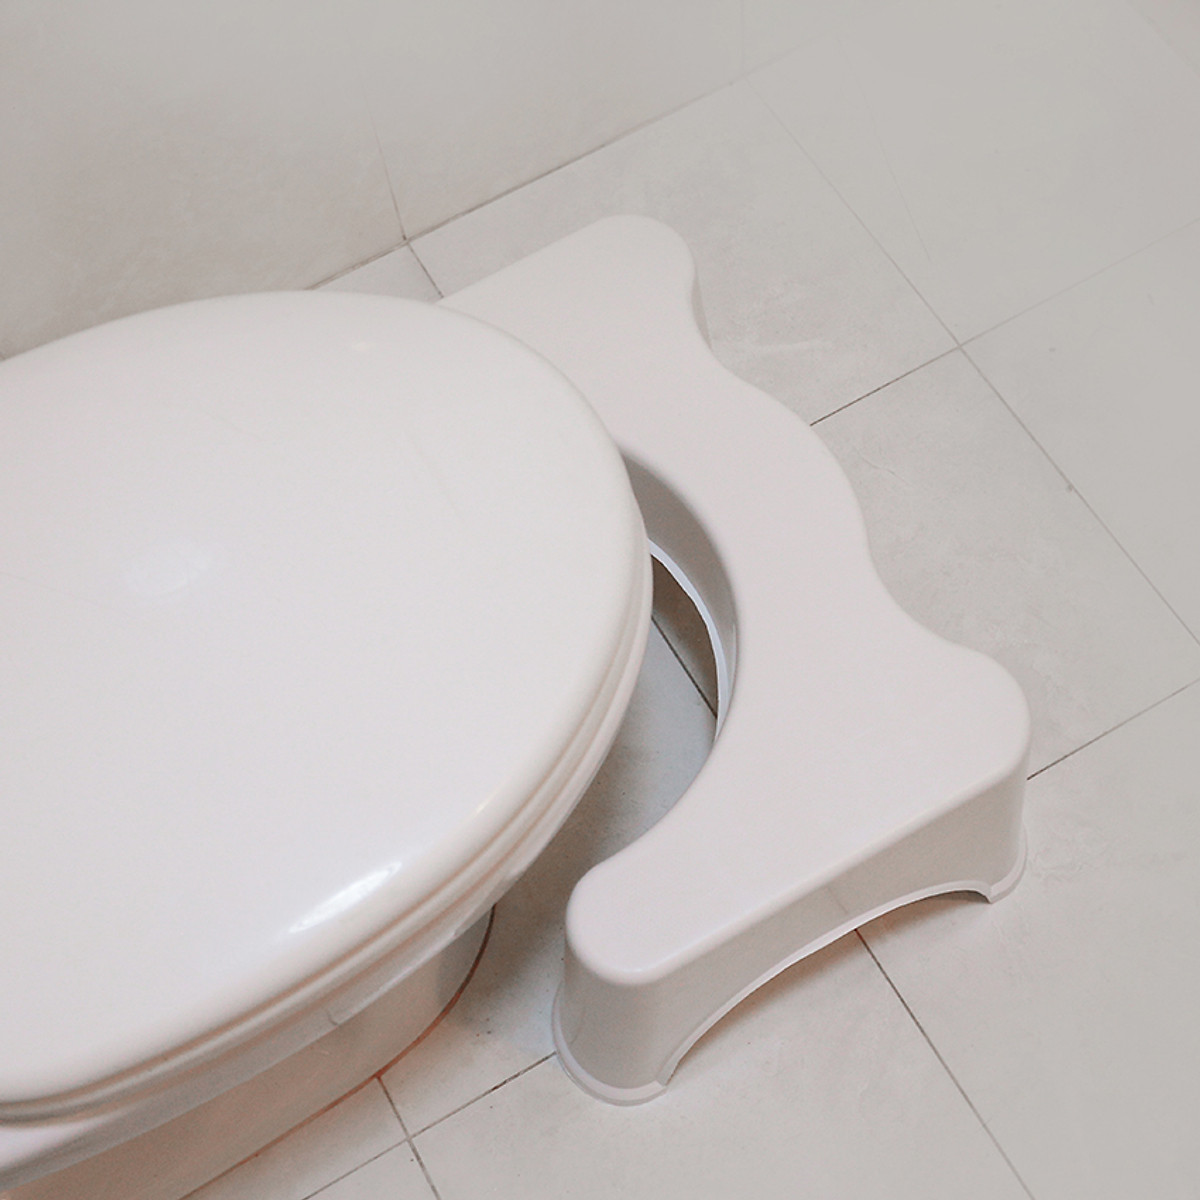 Ghế Kê Chân Toilet Chống Táo Bón Ngăn Ngừa Các Bệnh Tiêu Hóa Khi Đi Vệ Sinh - Hàng Chính Hãng MINIIN